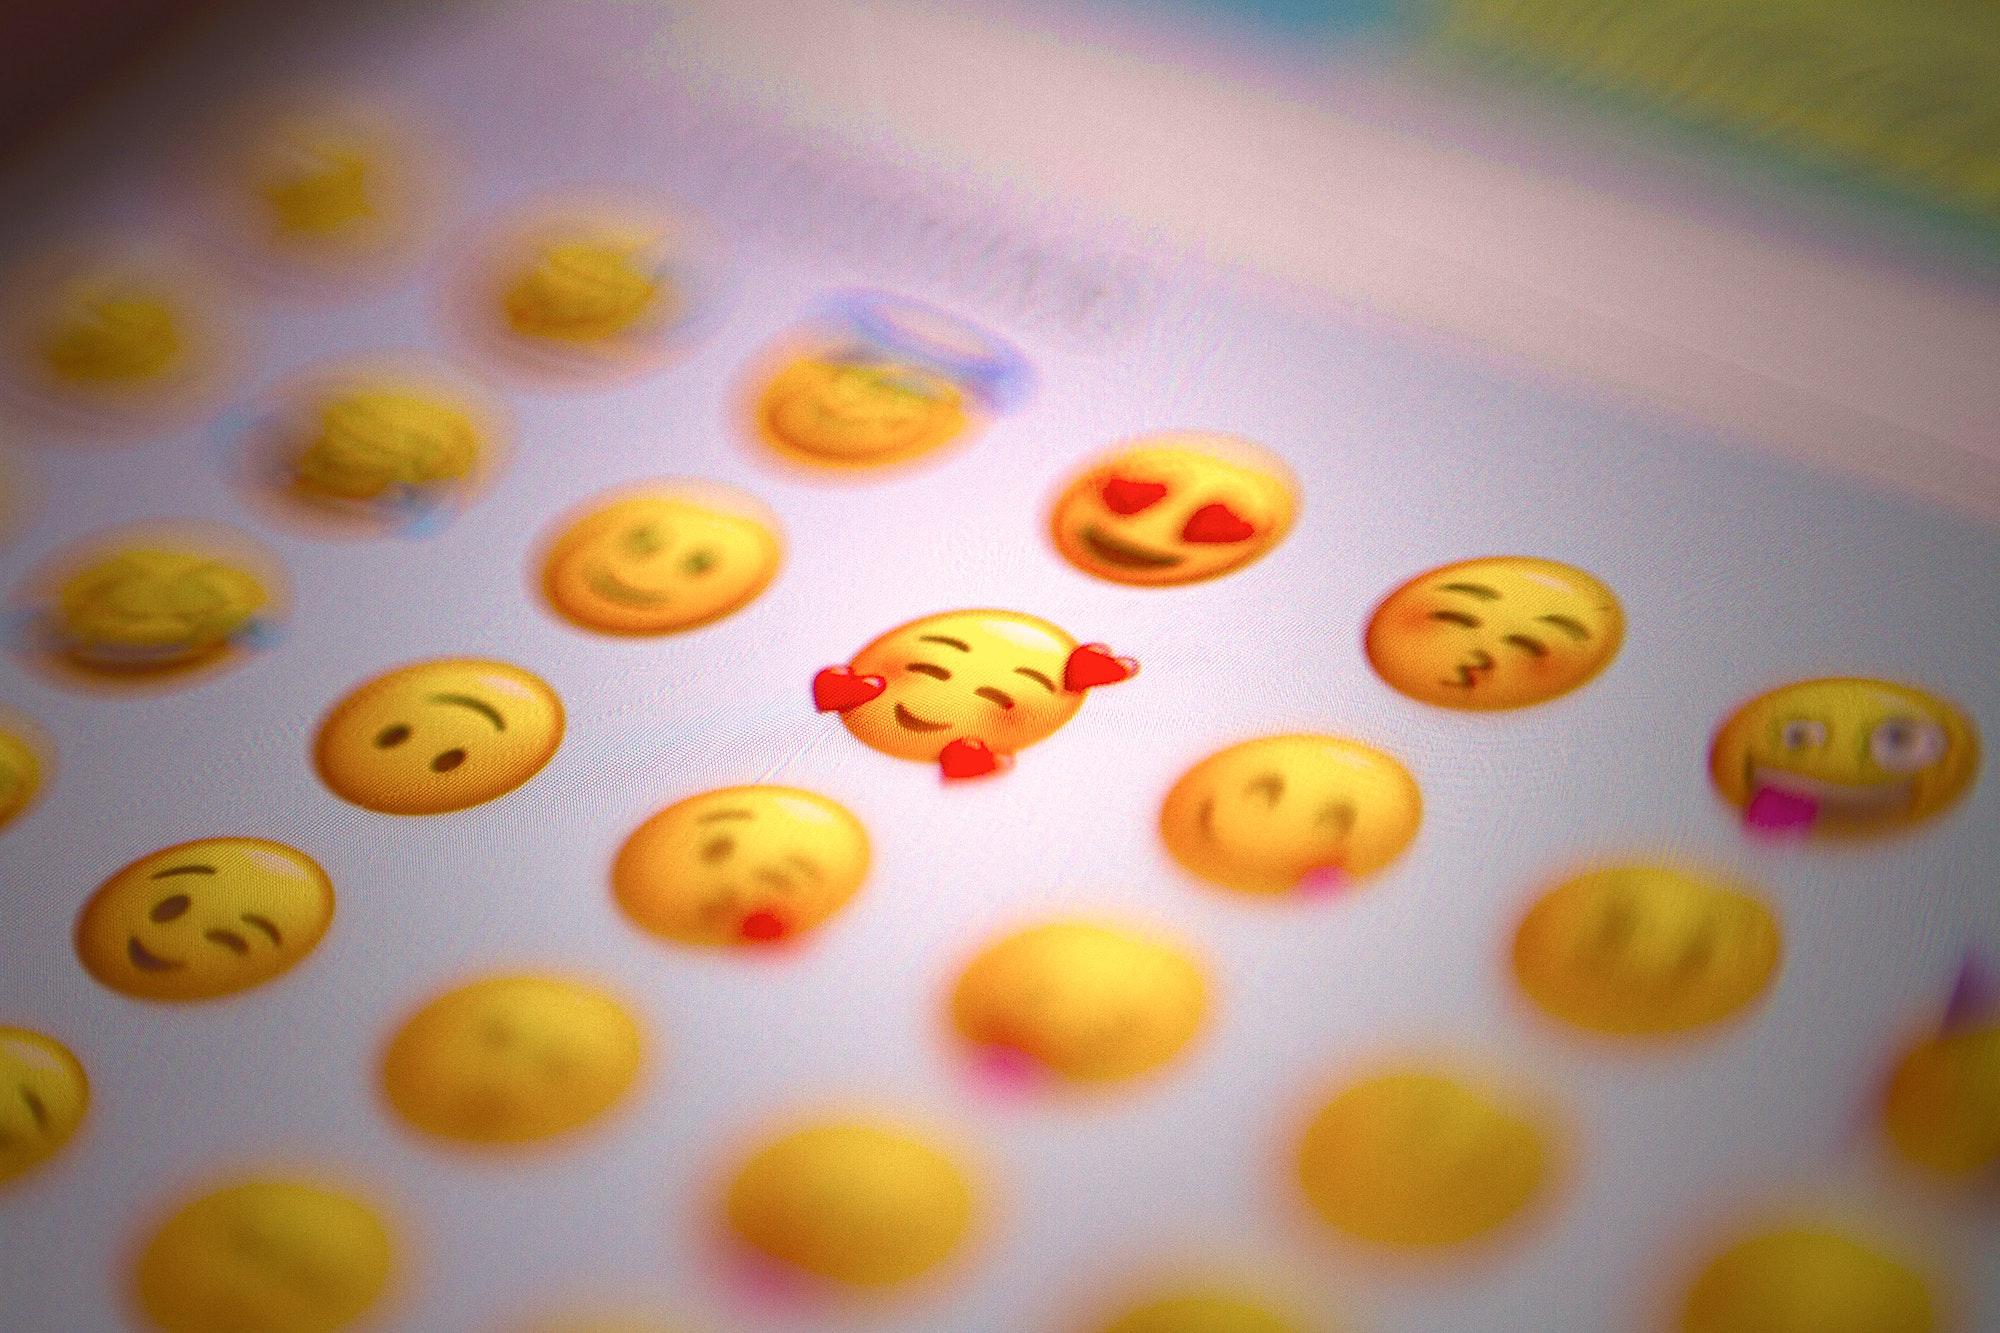 Teclado de Emojis (Domingo Alvarez E via Unsplash)